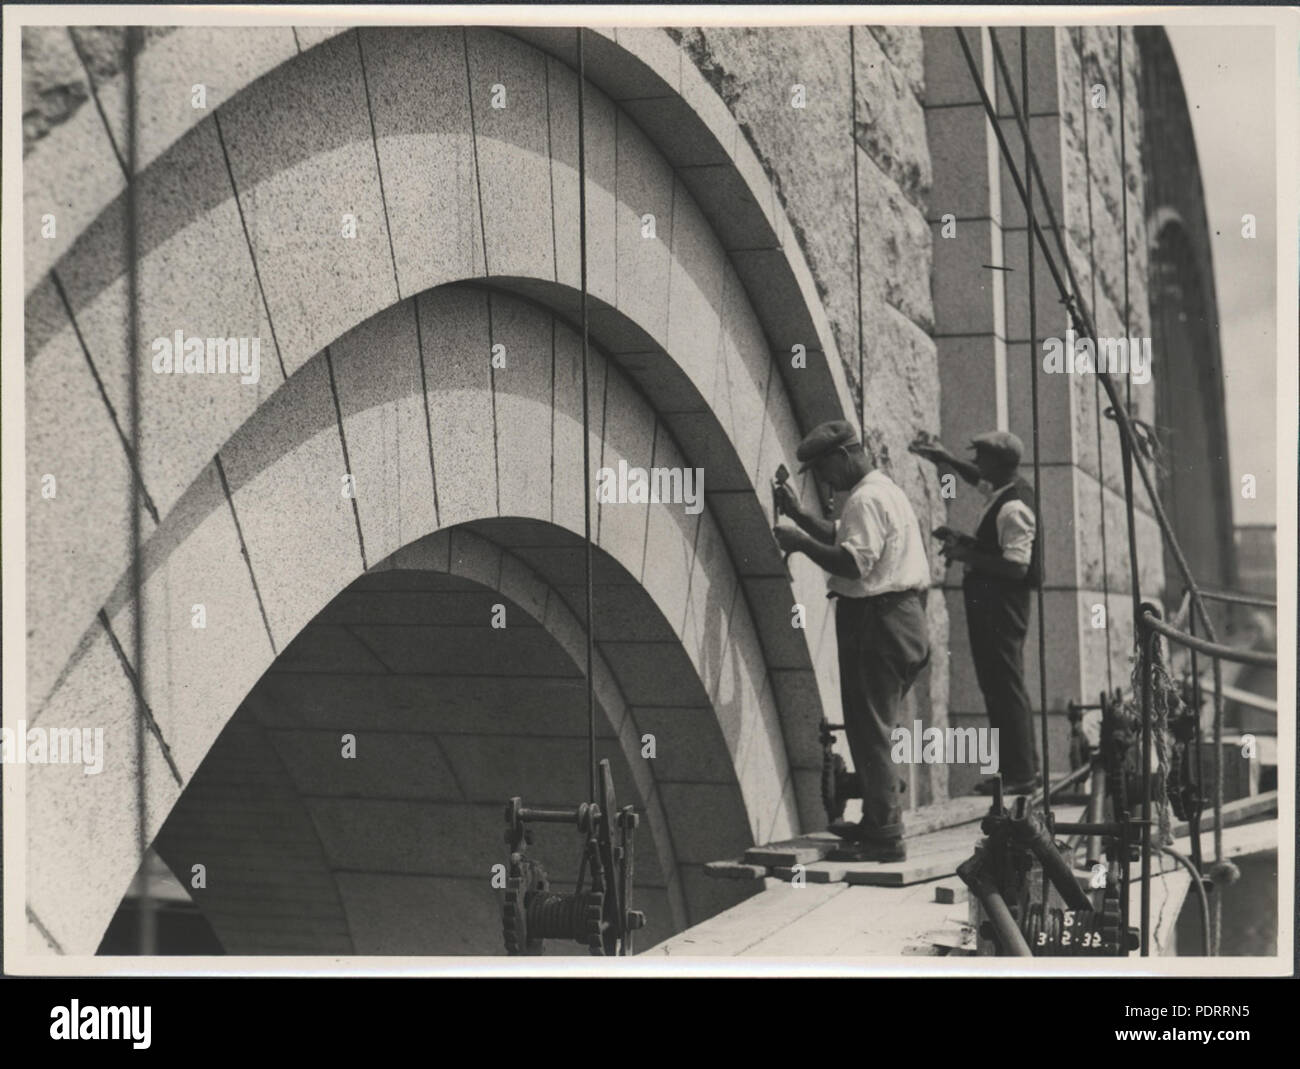 87/1353-172tirage photographique, les travailleurs du nettoyage du pylônes du pont du port, argent / gélatine / papier, photographie de la Nouvelle Galles du sud Ministère des Travaux publics, Sydney, Australie, 34 février 1932, le nettoyage de pylônes du pont du port, 1932 (8283748320) Banque D'Images